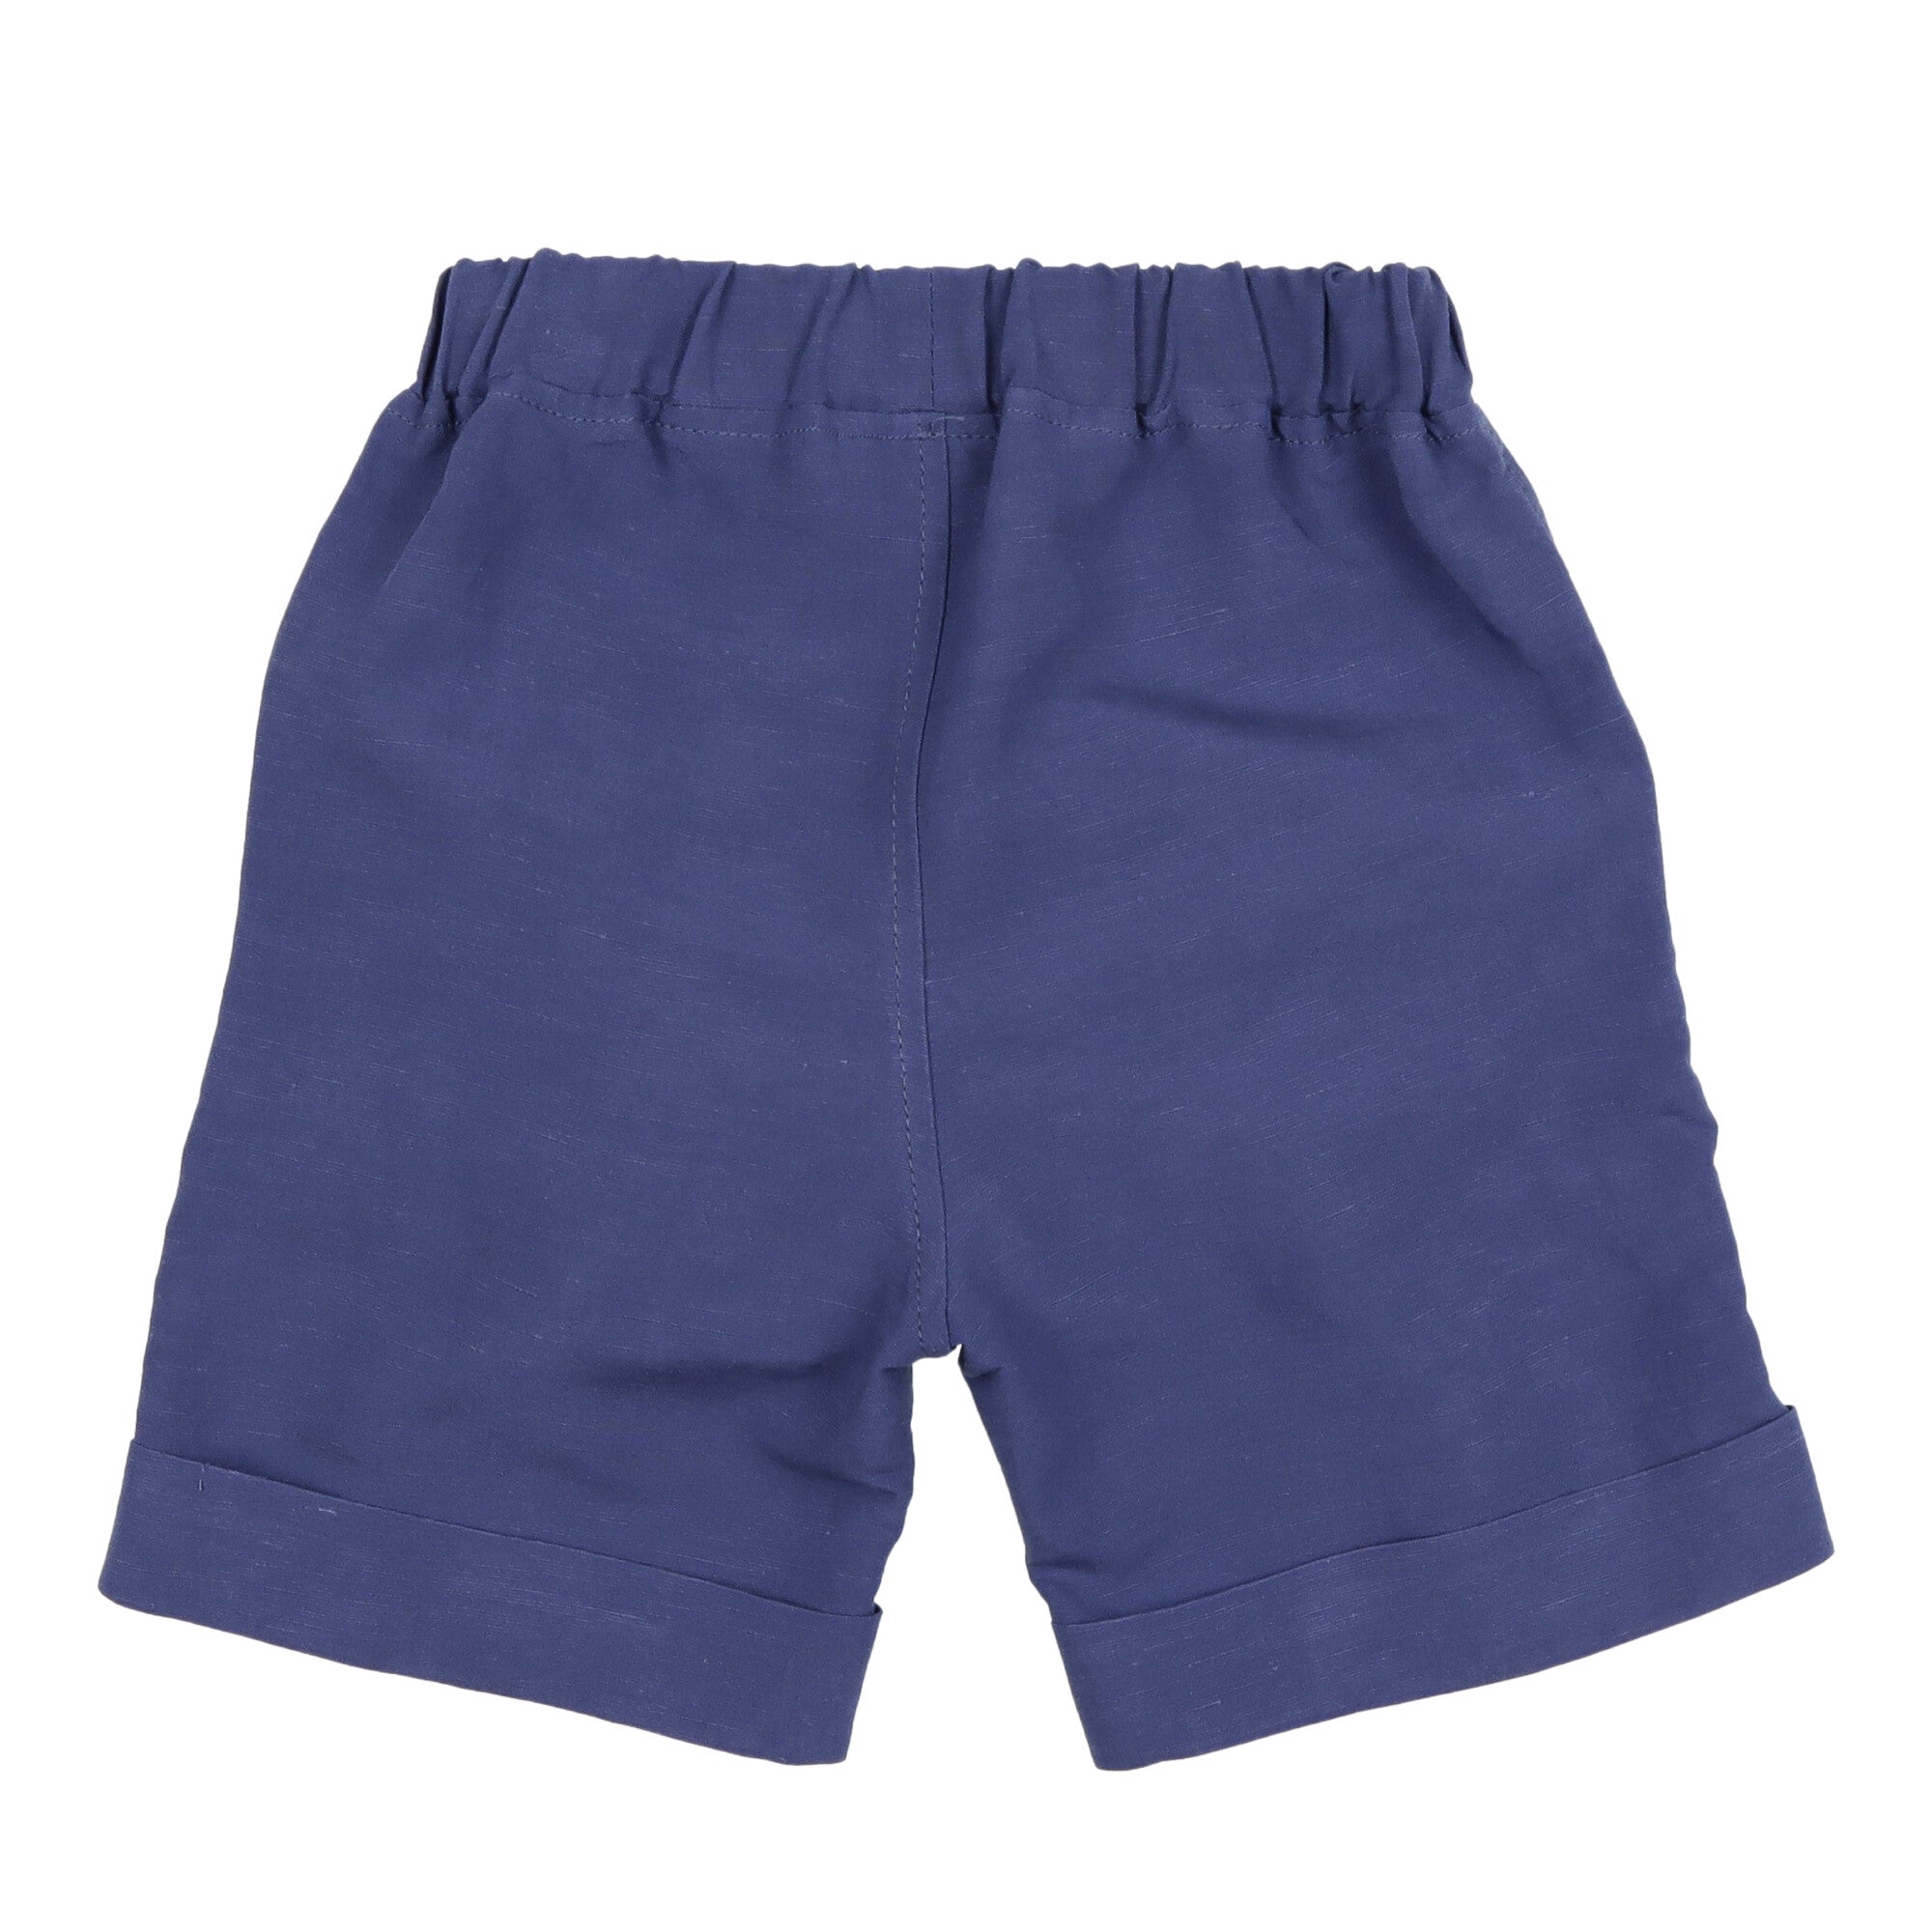 pantalone-corto-bambino-blu-elegante